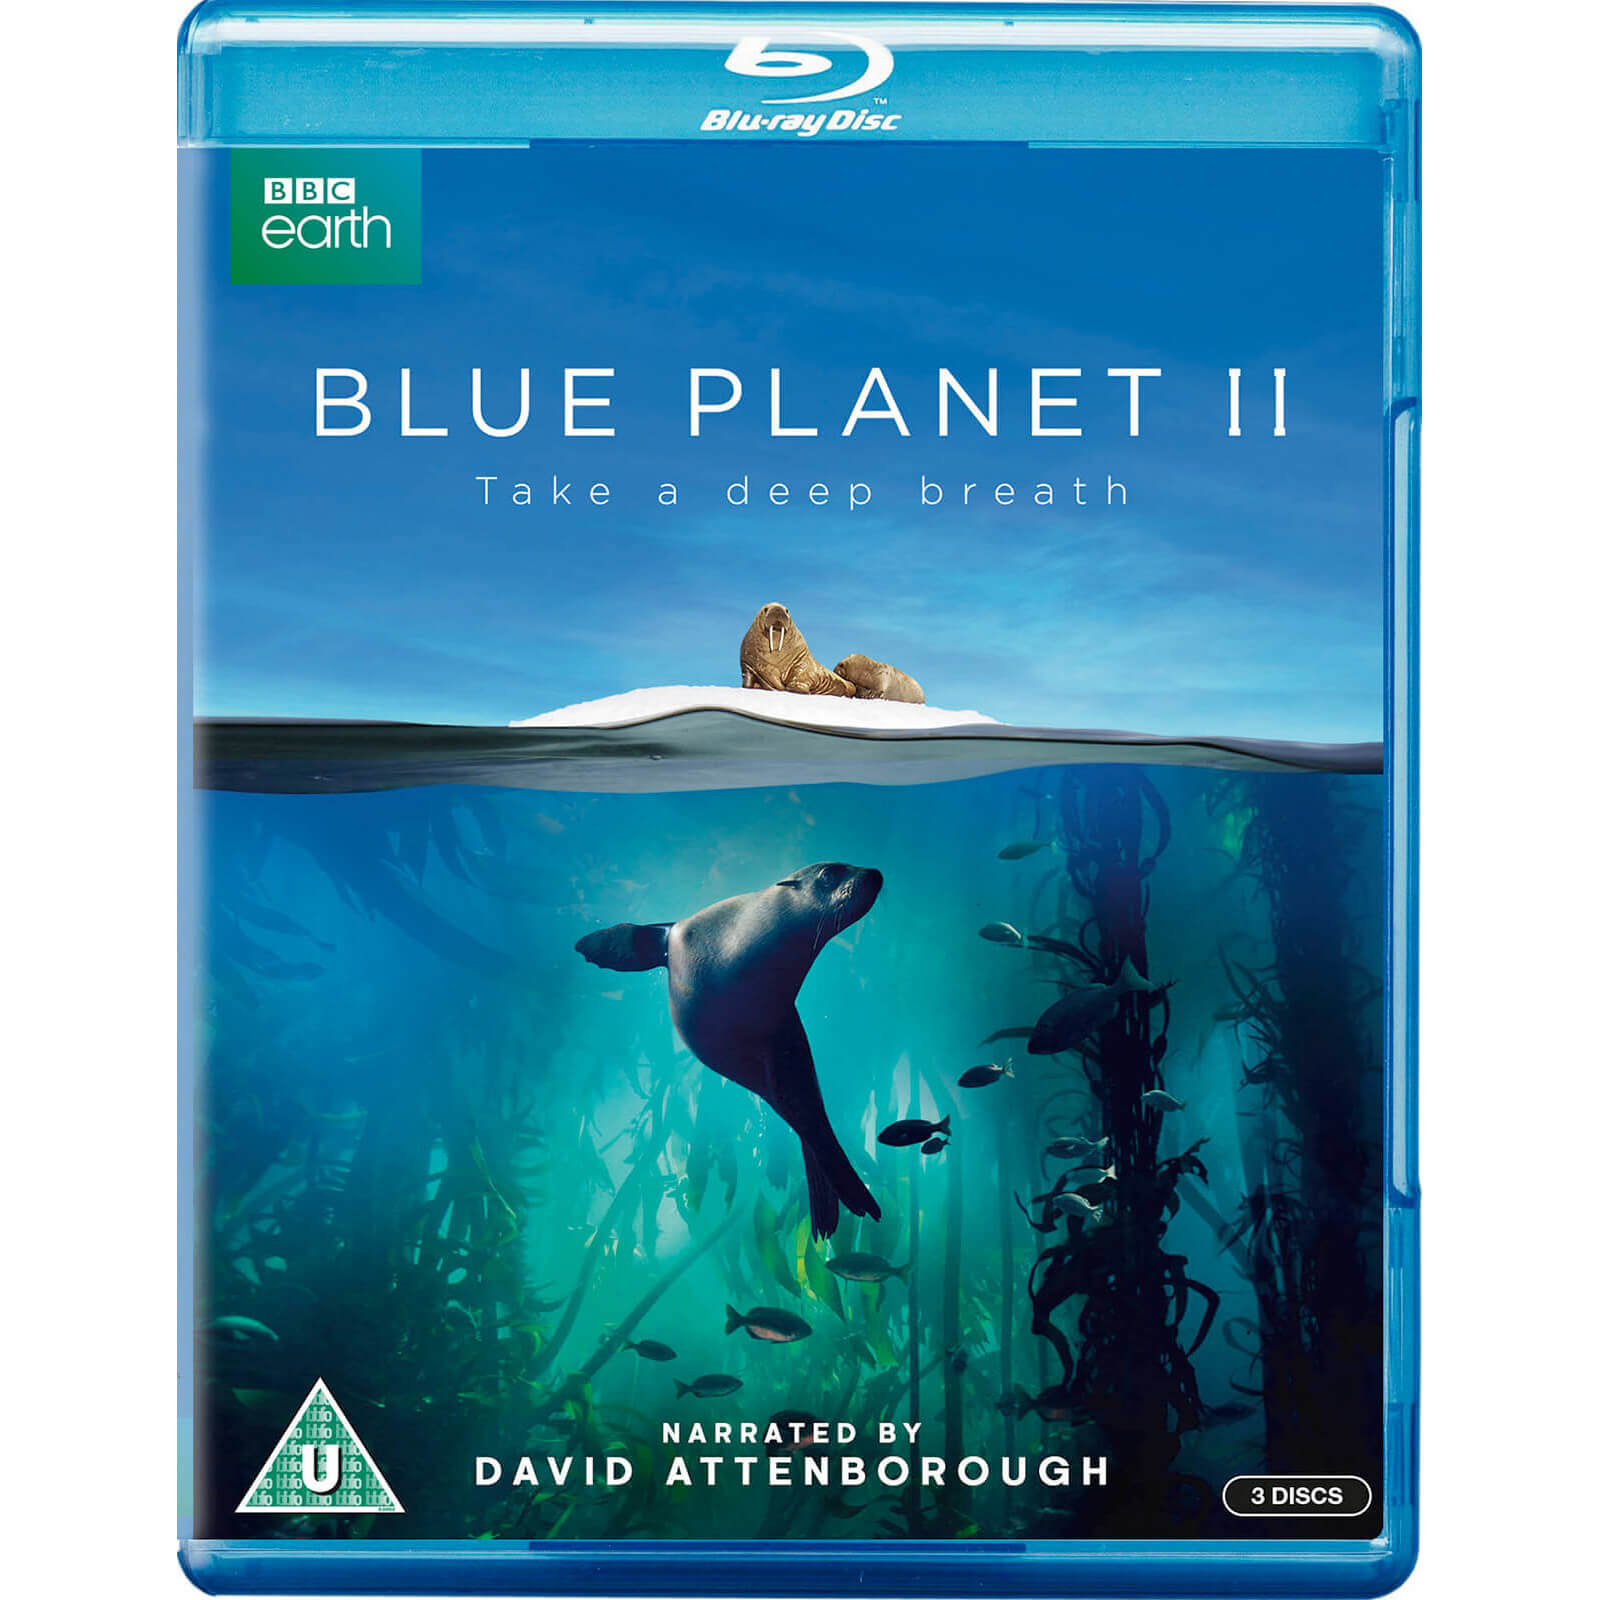 Blauer Planet II von BBC